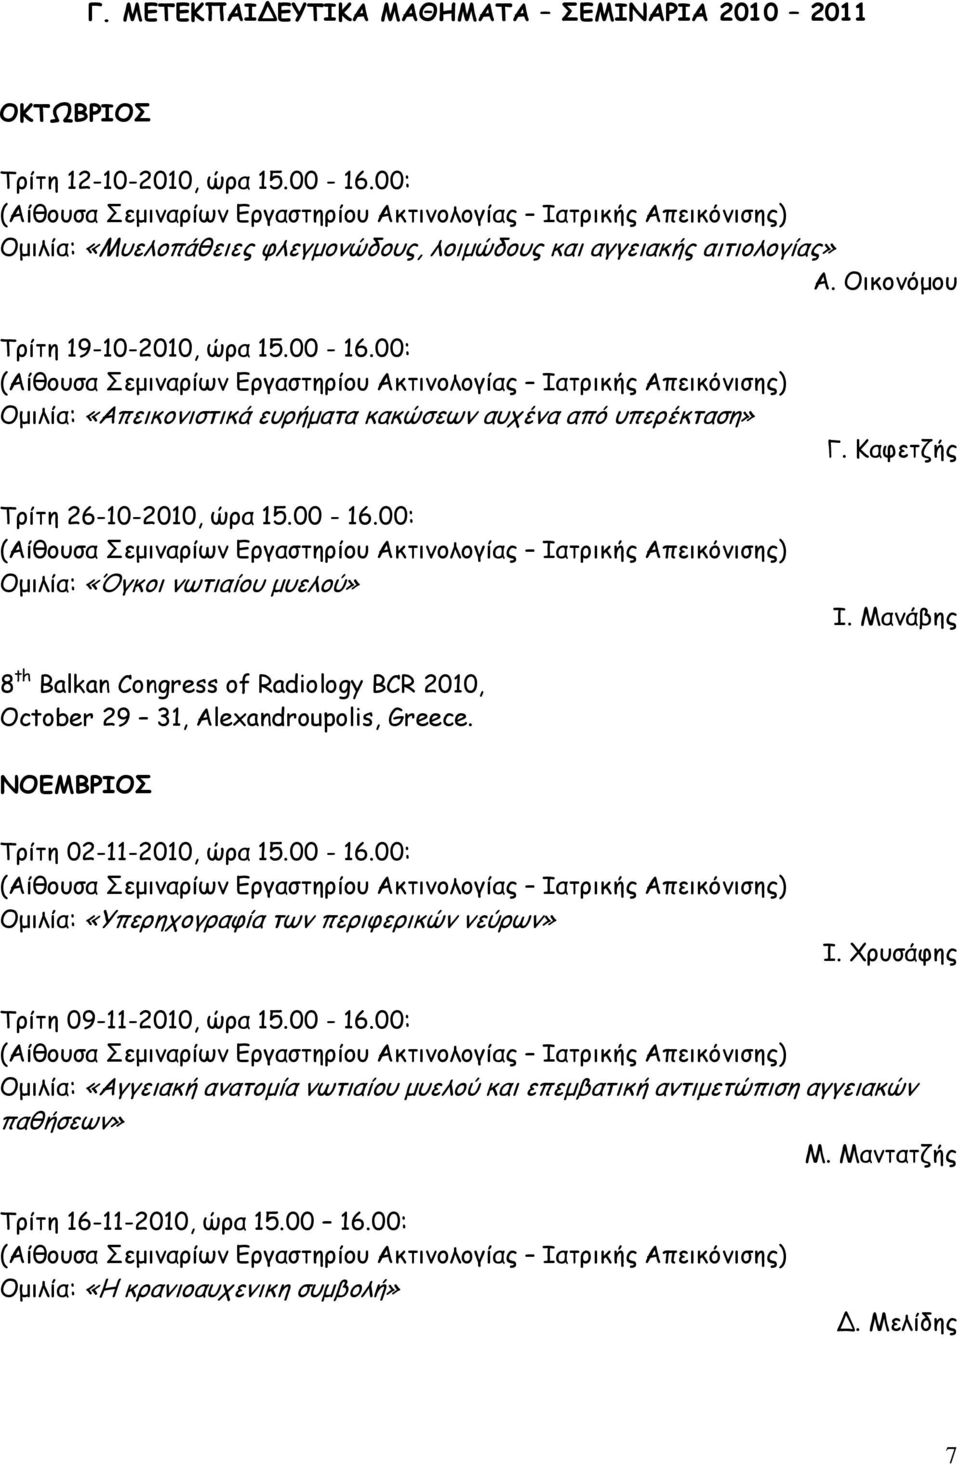 Μανάβης 8 th Balkan Congress of Radiology BCR 2010, October 29 31, Alexandroupolis, Greece. ΝΟΕΜΒΡΙΟΣ Τρίτη 02-11-2010, ώρα 15.00-16.00: Ομιλία: «Υπερηχογραφία των περιφερικών νεύρων» Ι.